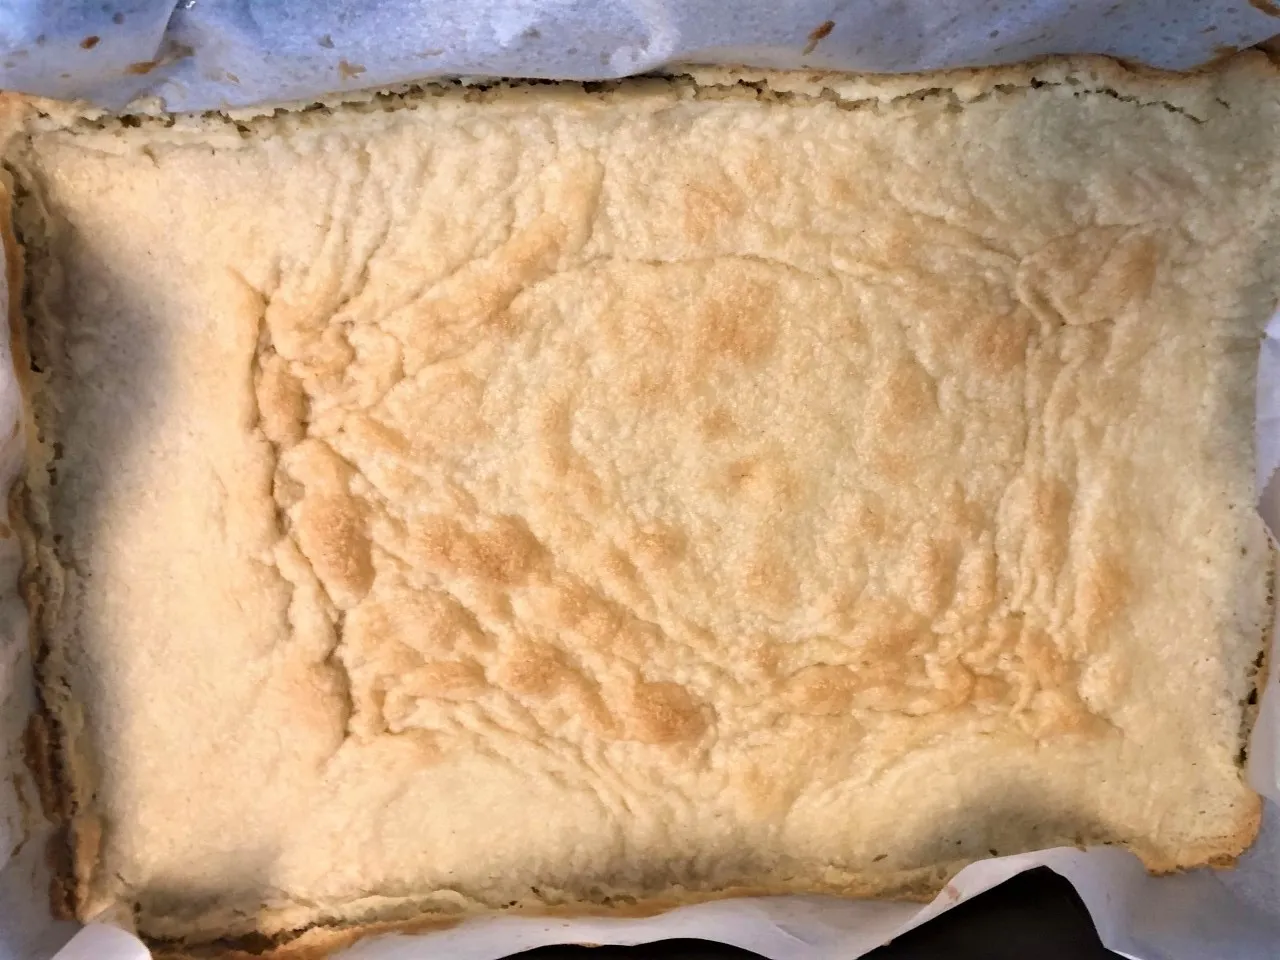 Image of Lemon Bar bottom crust, baked